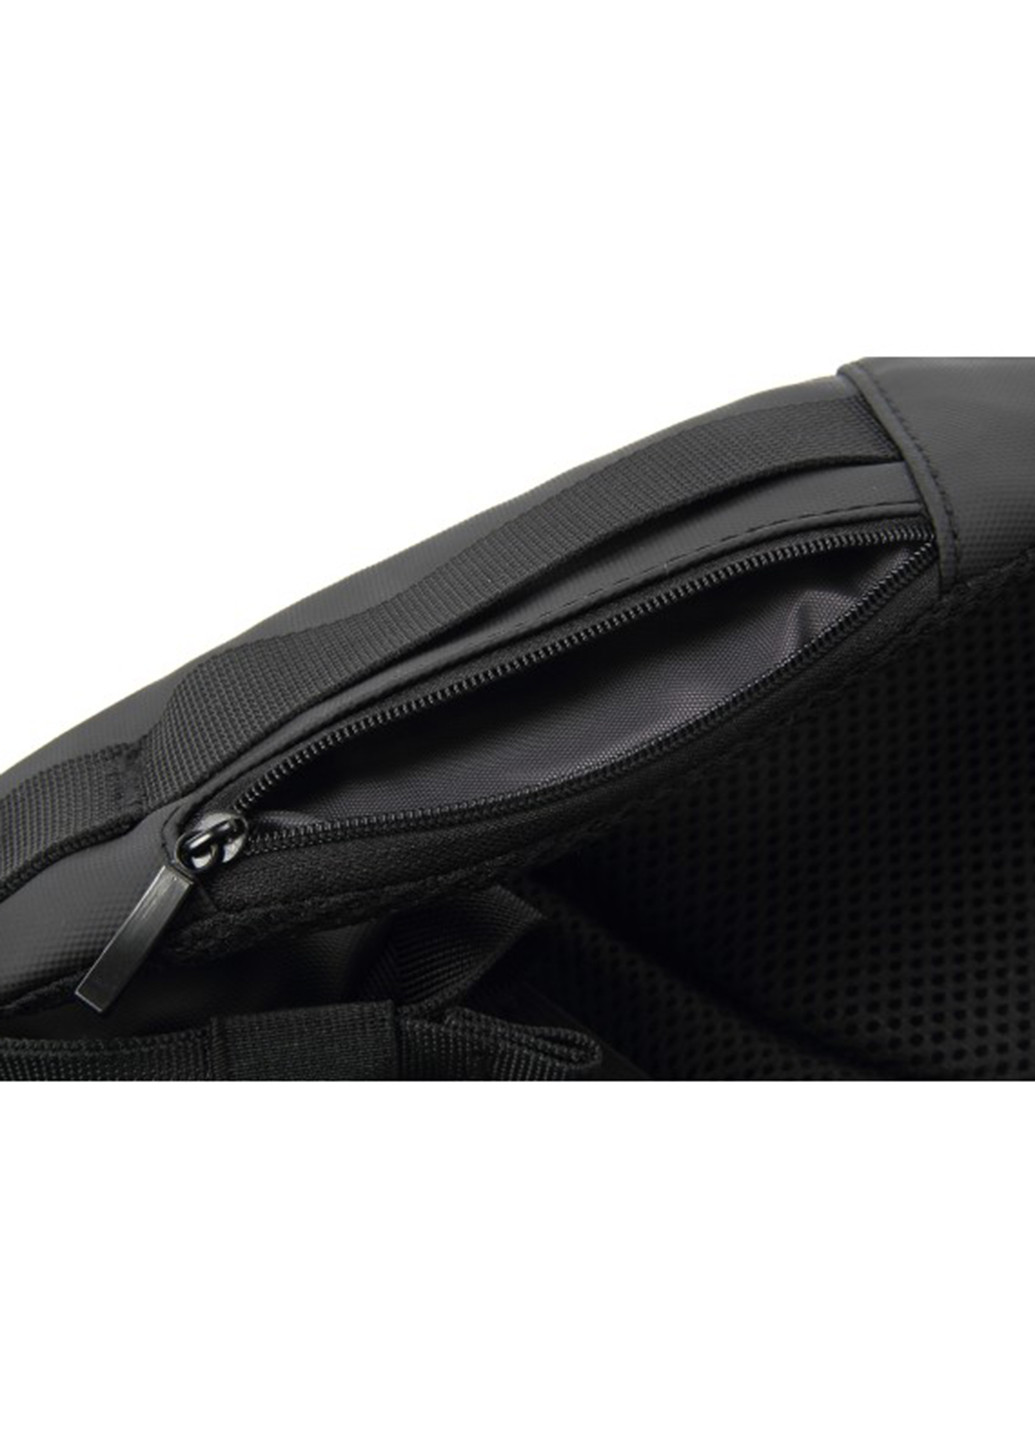 Рюкзак для ноутбука 15.6" DW-01 anti-theft black (378536) DEF для ноутбука def 15.6" dw-01 anti-theft black (138727476)